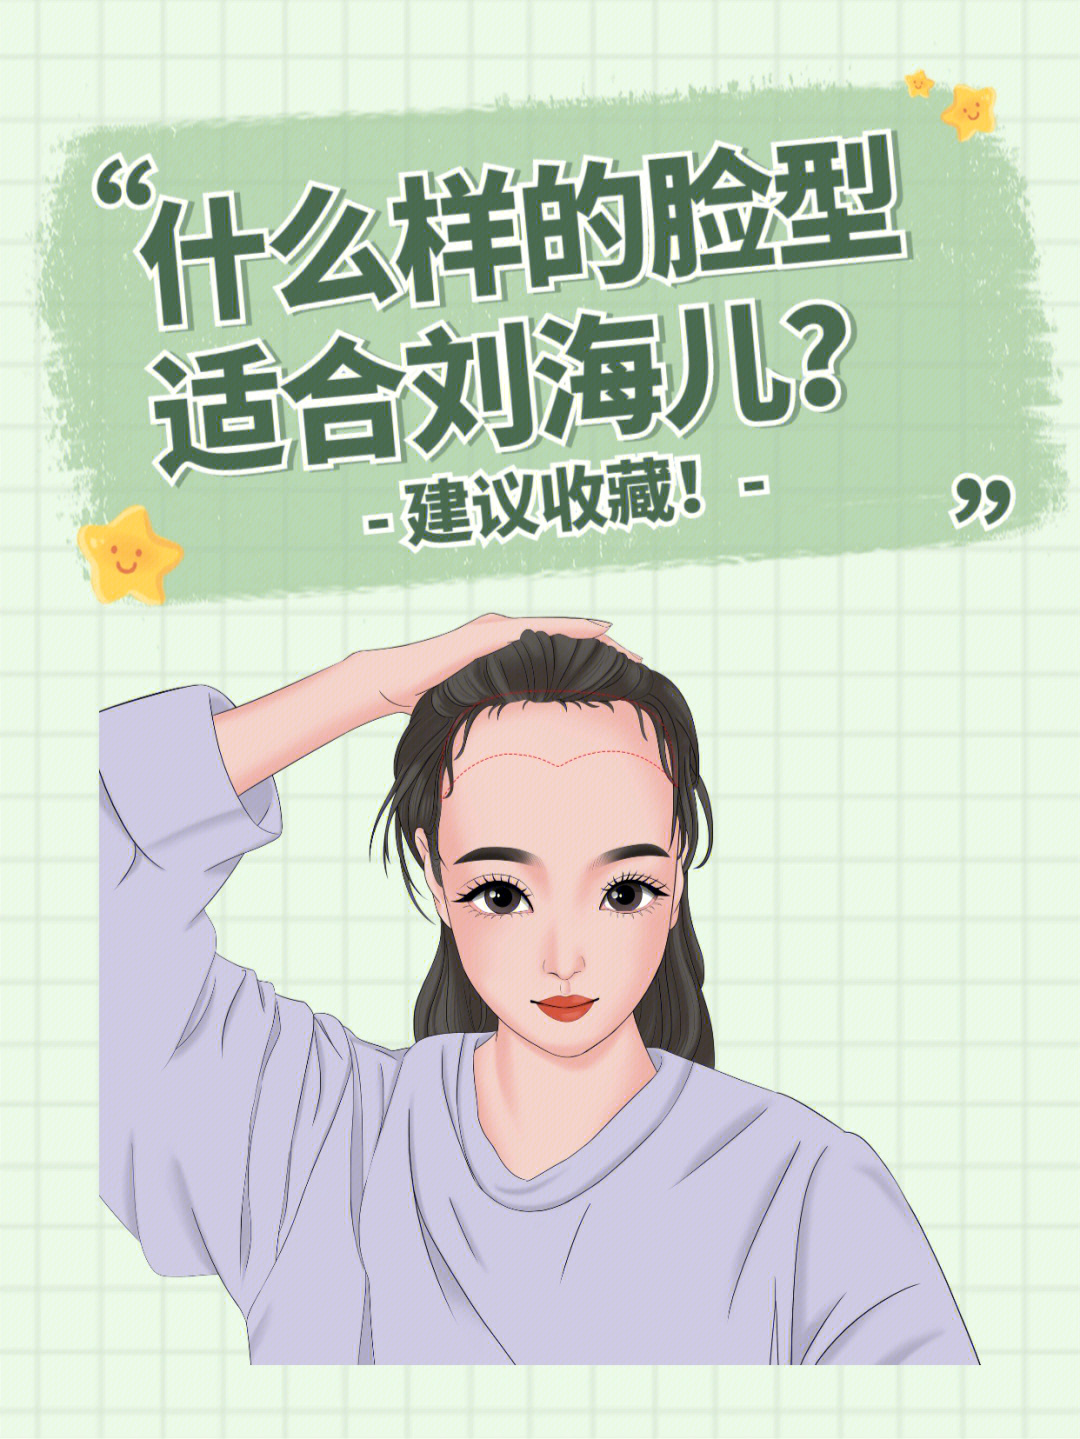 通过刘海修饰脸型是一种常见的方式,但并不人人都适合刘海,刘海的样式